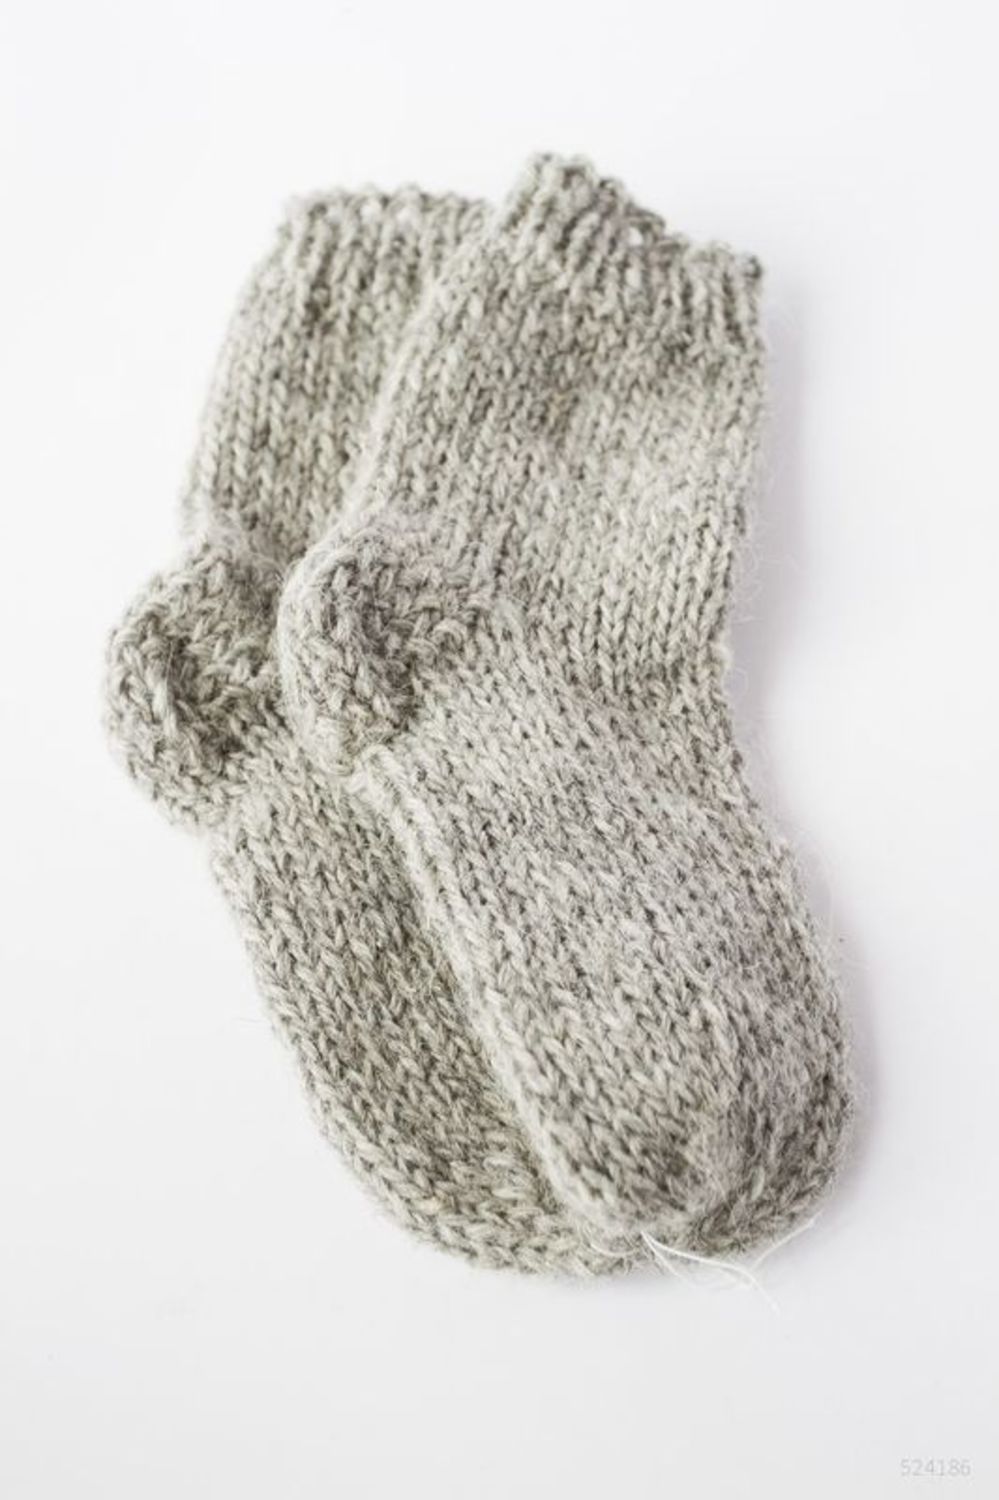 Knitted socks for children photo 1